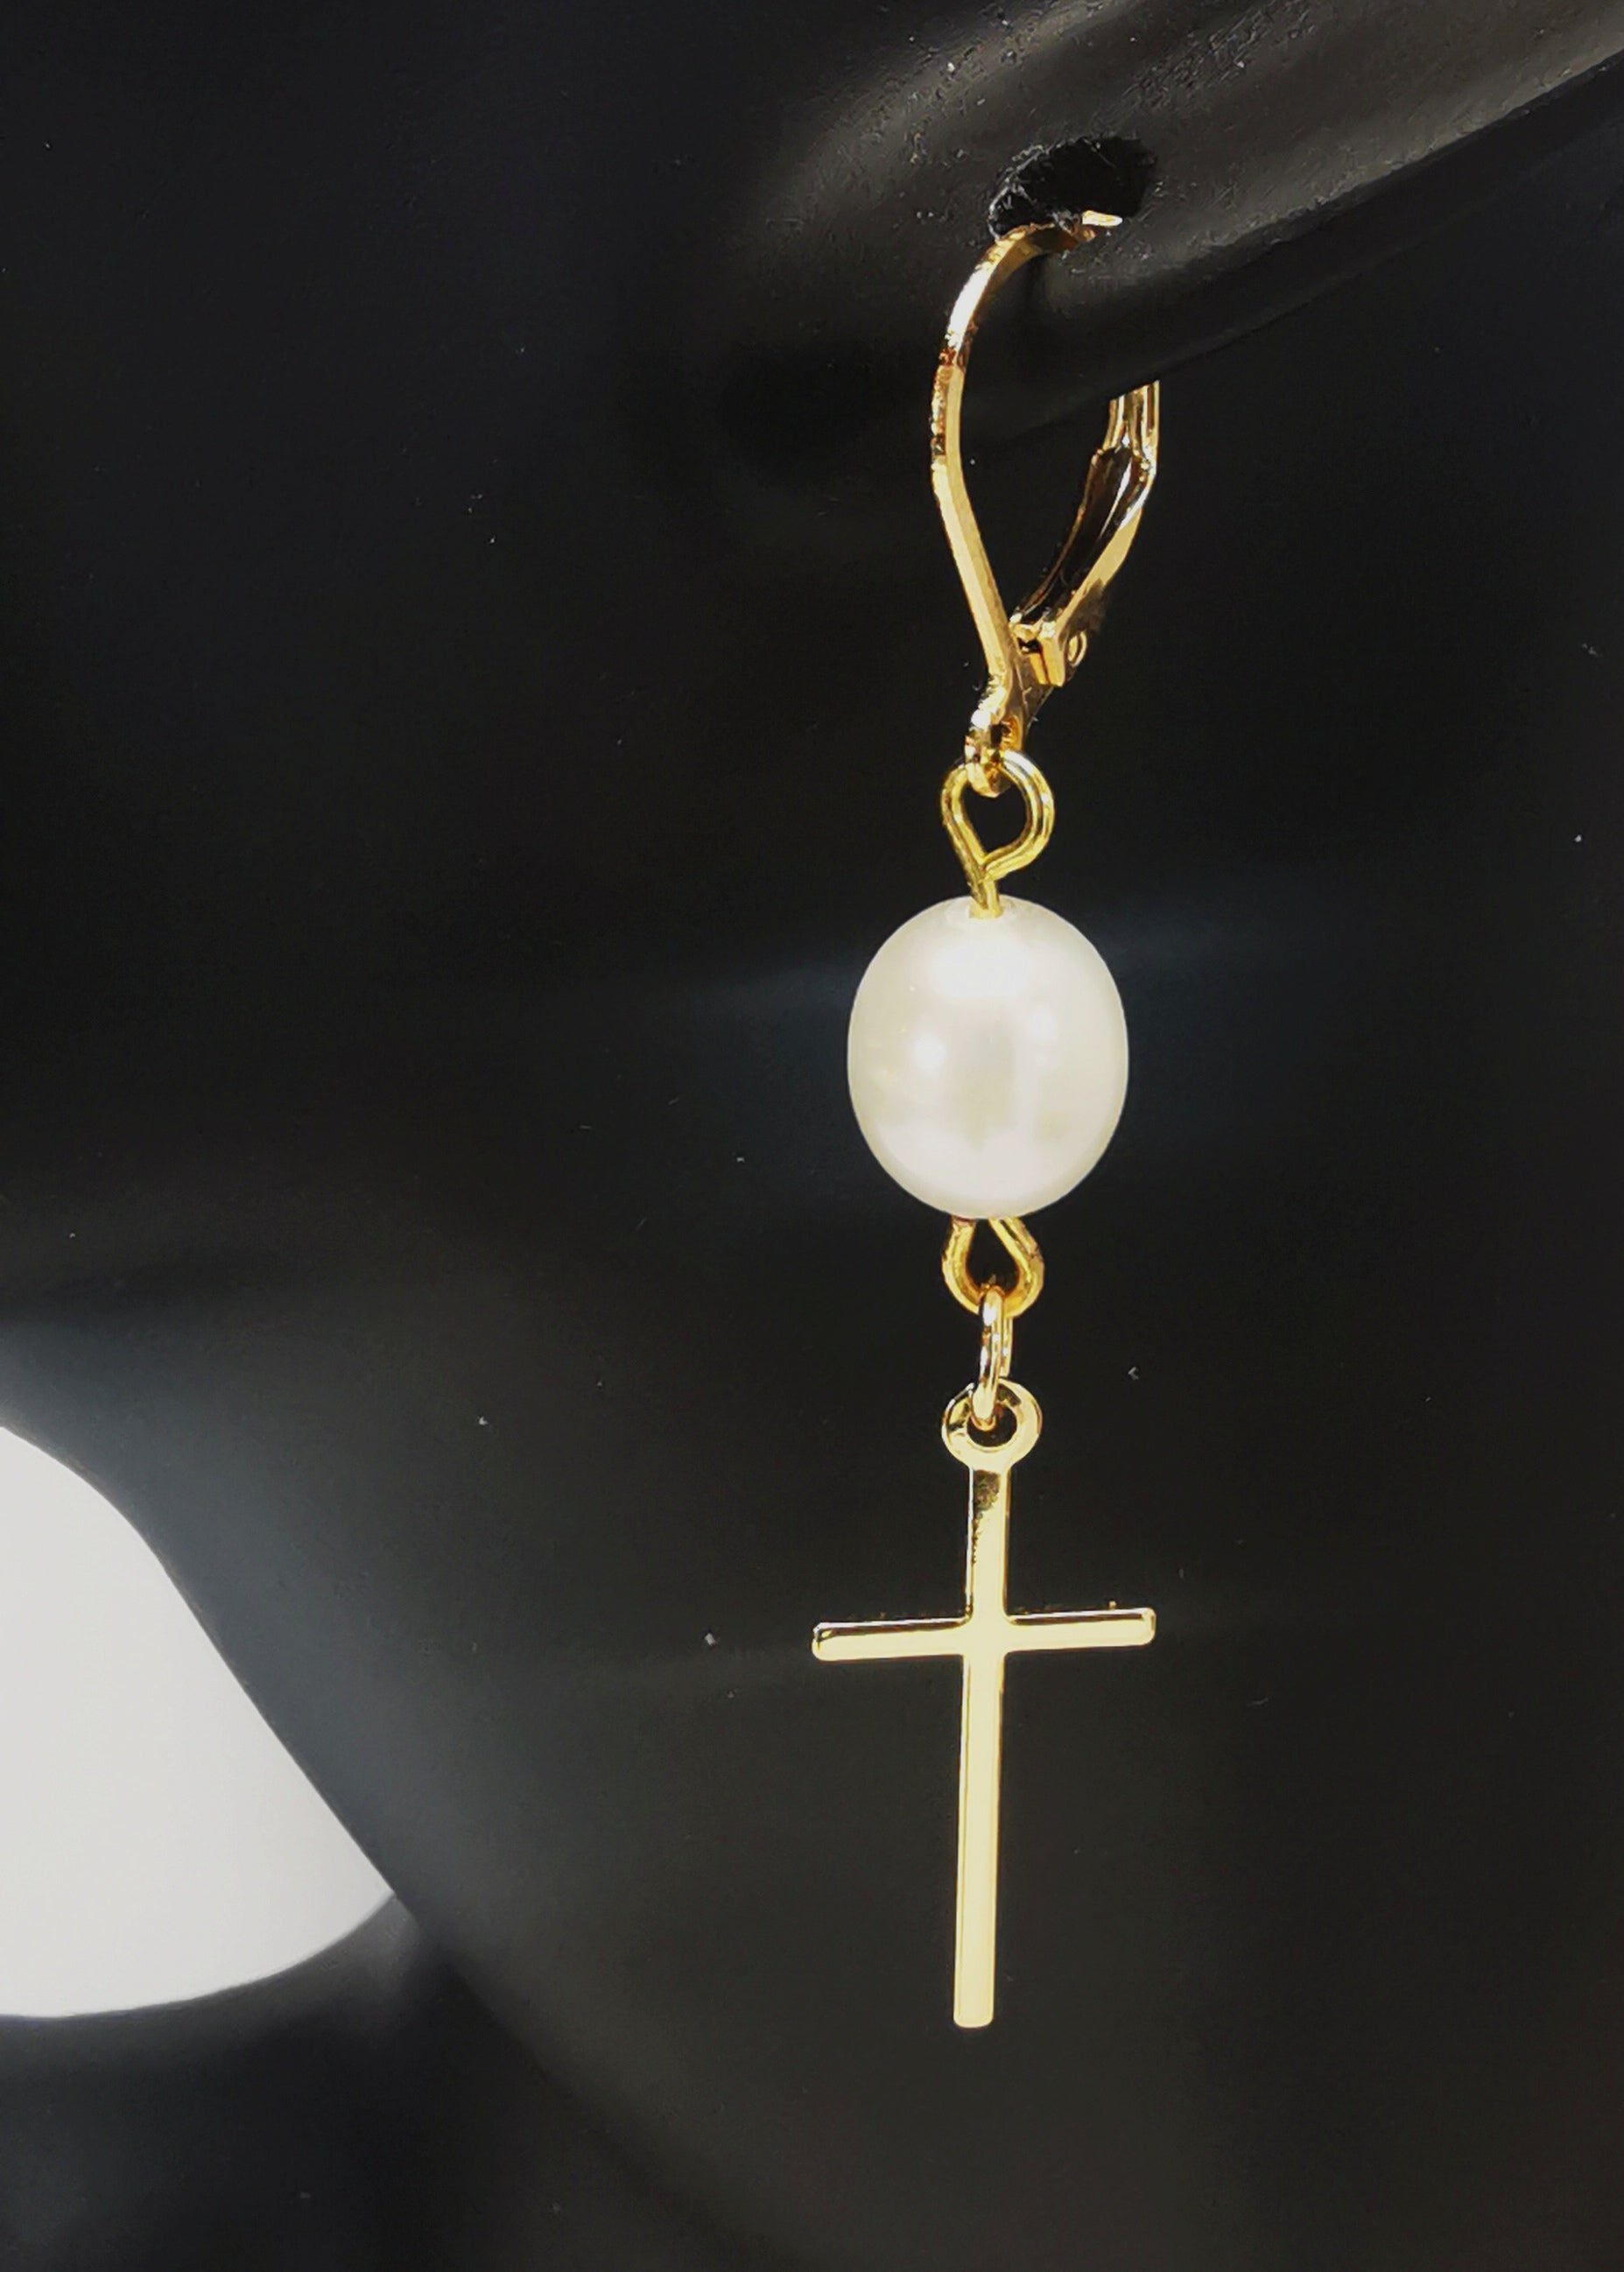 Une boucle d'oreilles perle de culture ovale 7-9mm blanche , accrochée sous dormeuse plaquée or. Sous la perle est suspendue une croix plaquée or de 22x10mm. Présentée accrochée à l'oreille d'un mannequin buste. Vue de coté en très gros plan.